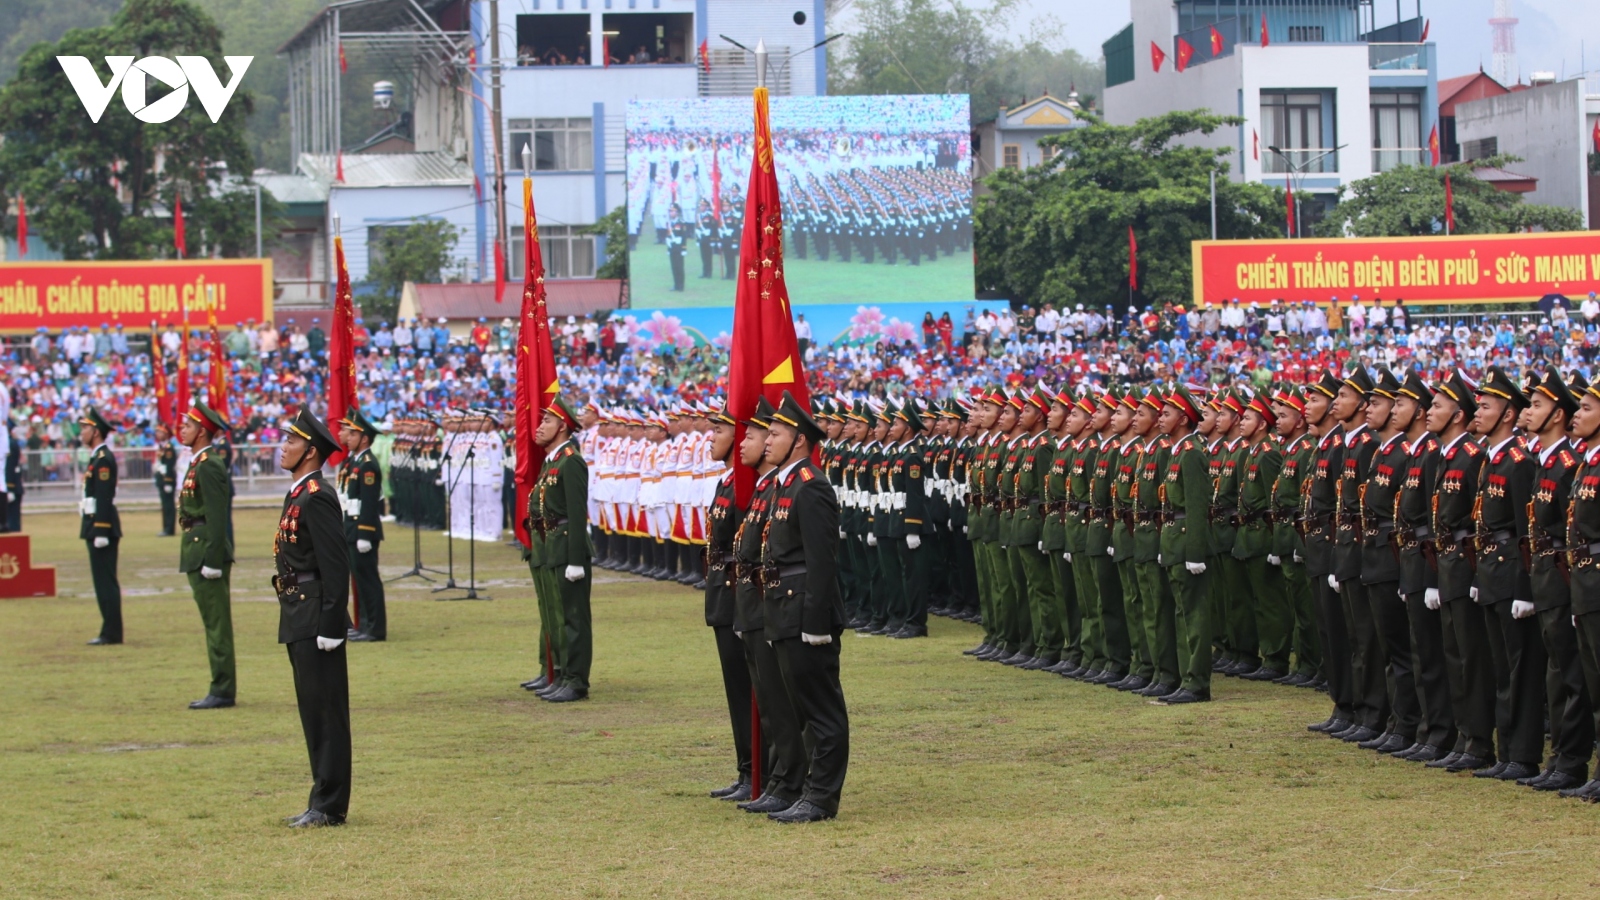 Trực tiếp: Bắt đầu Lễ kỷ niệm 70 năm Chiến thắng Điện Biên Phủ